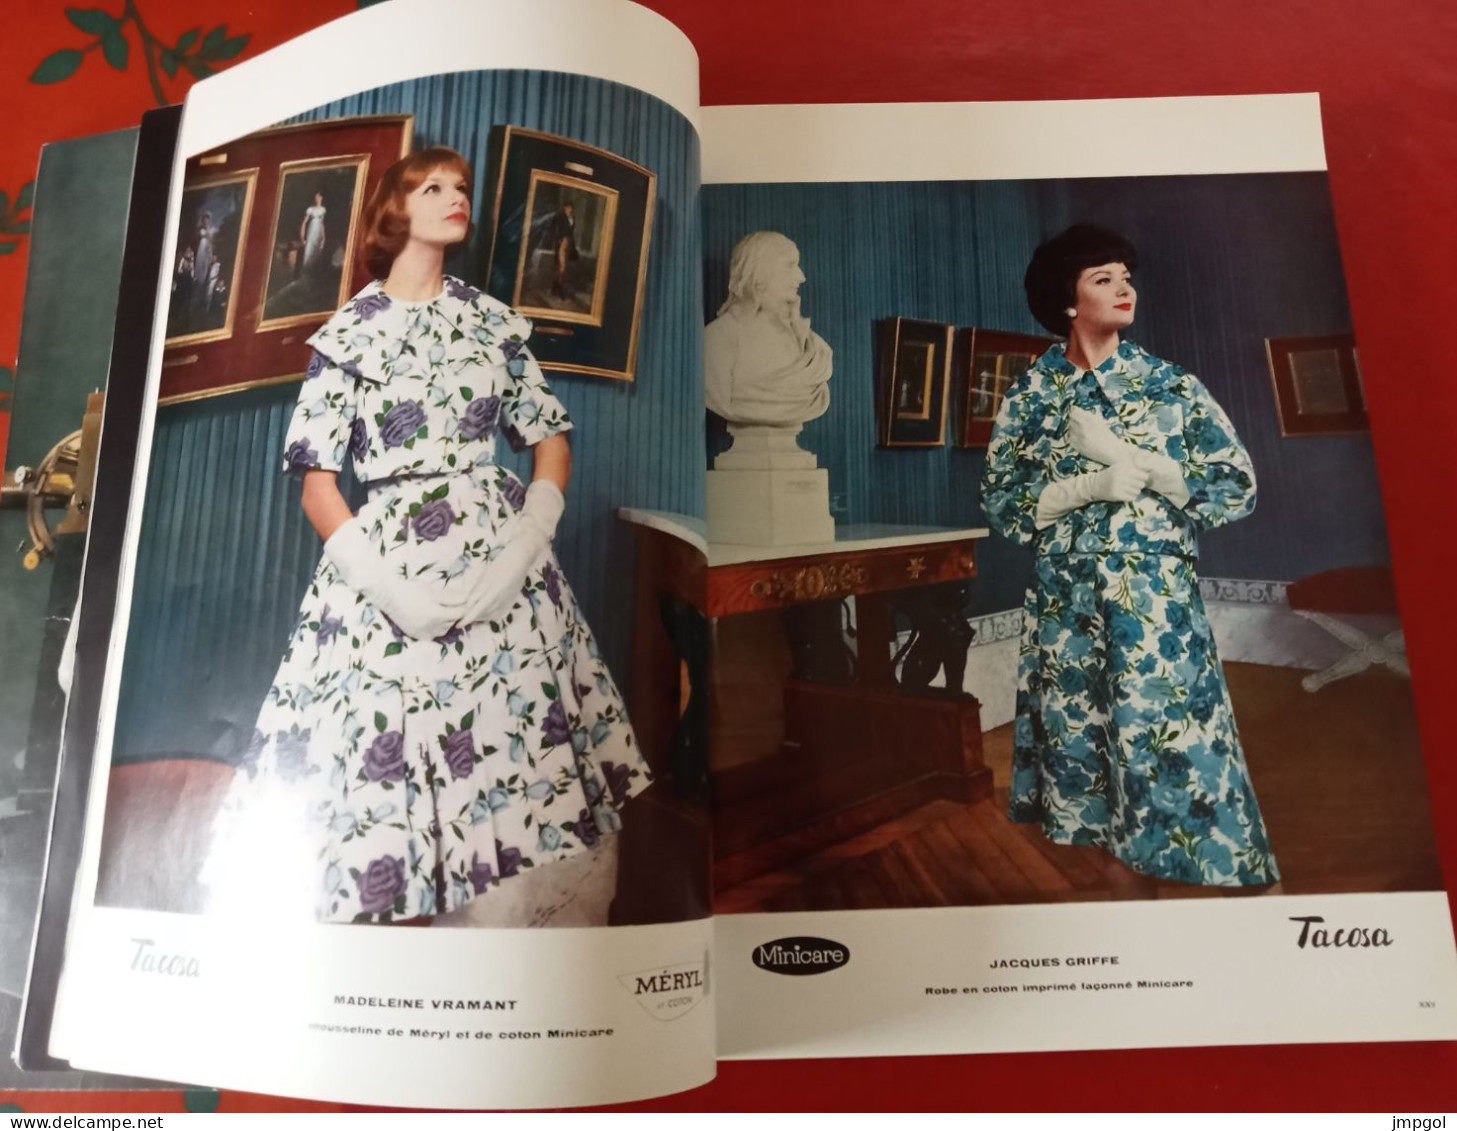 Officiel De La Couture Et De La Mode De Paris 1959 Collection Printemps Dior Patou Balmain De Rauch Heim Cardin Givenchy - Lifestyle & Mode